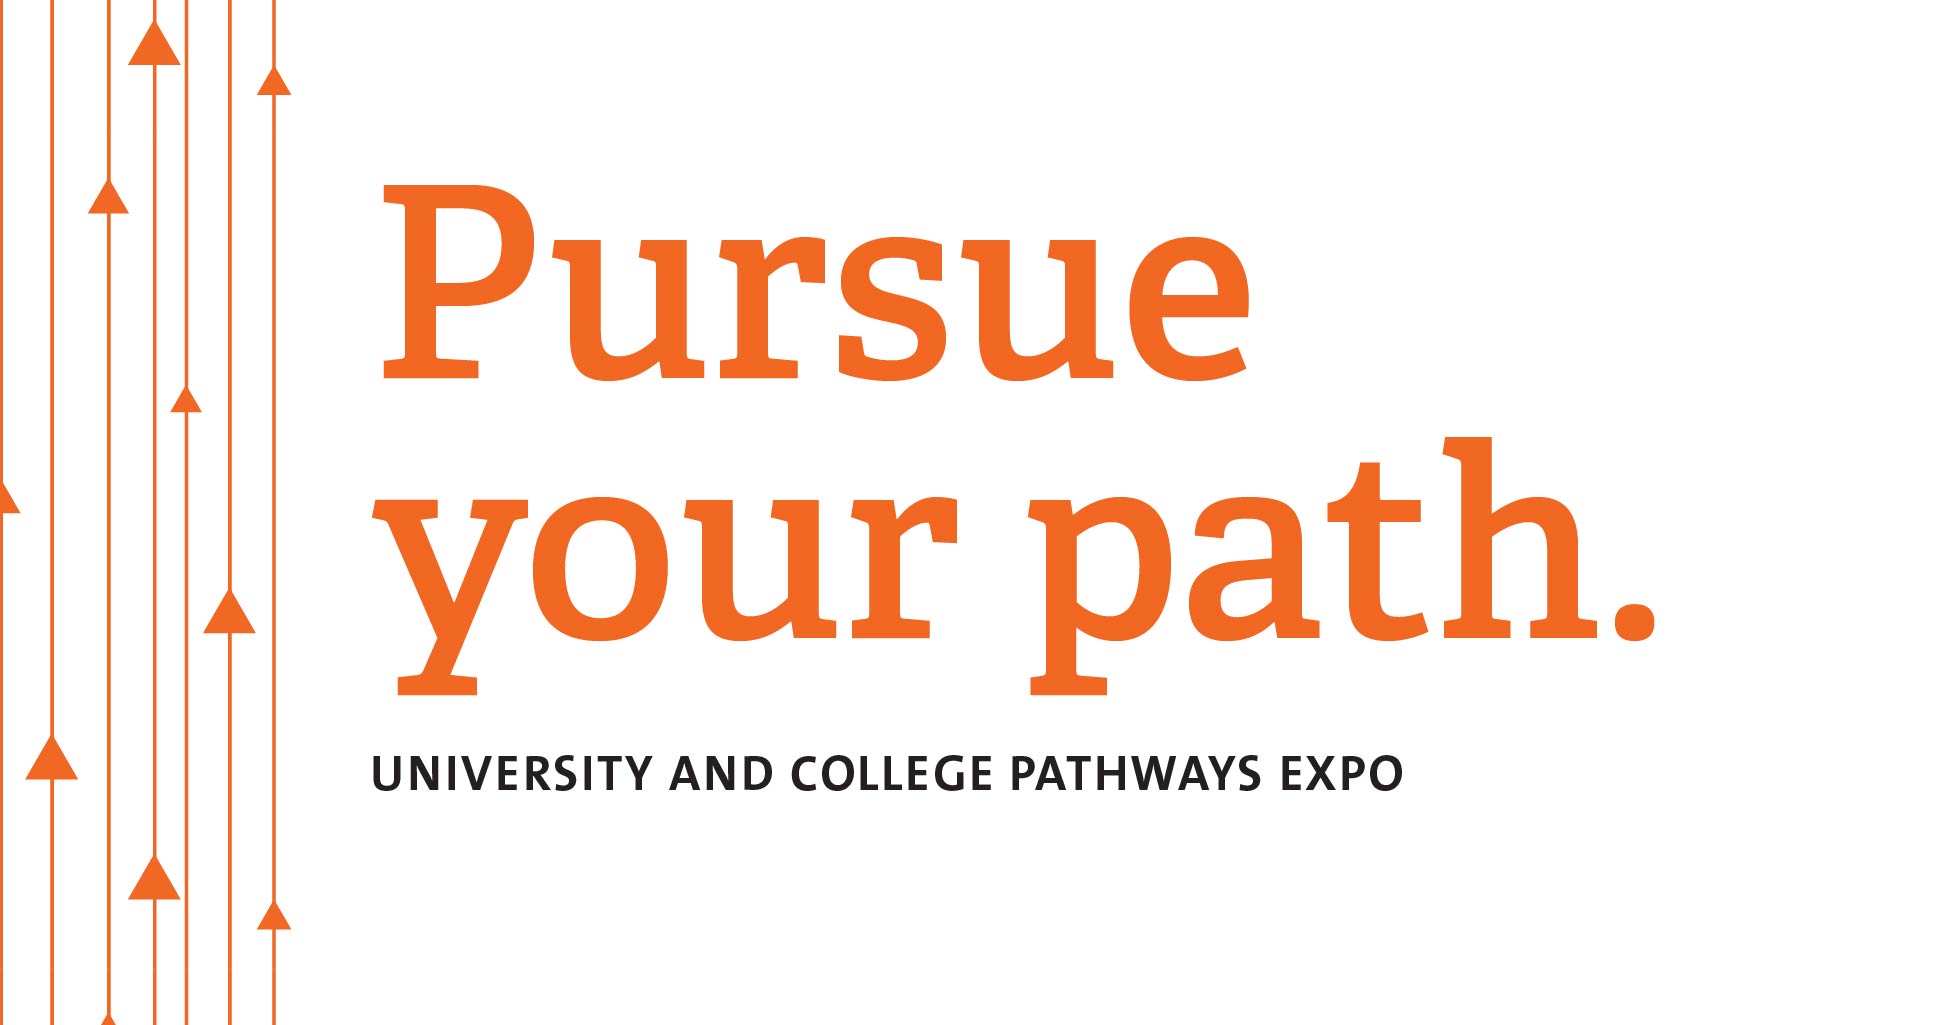 Nov 7 – University And College Pathways Expo